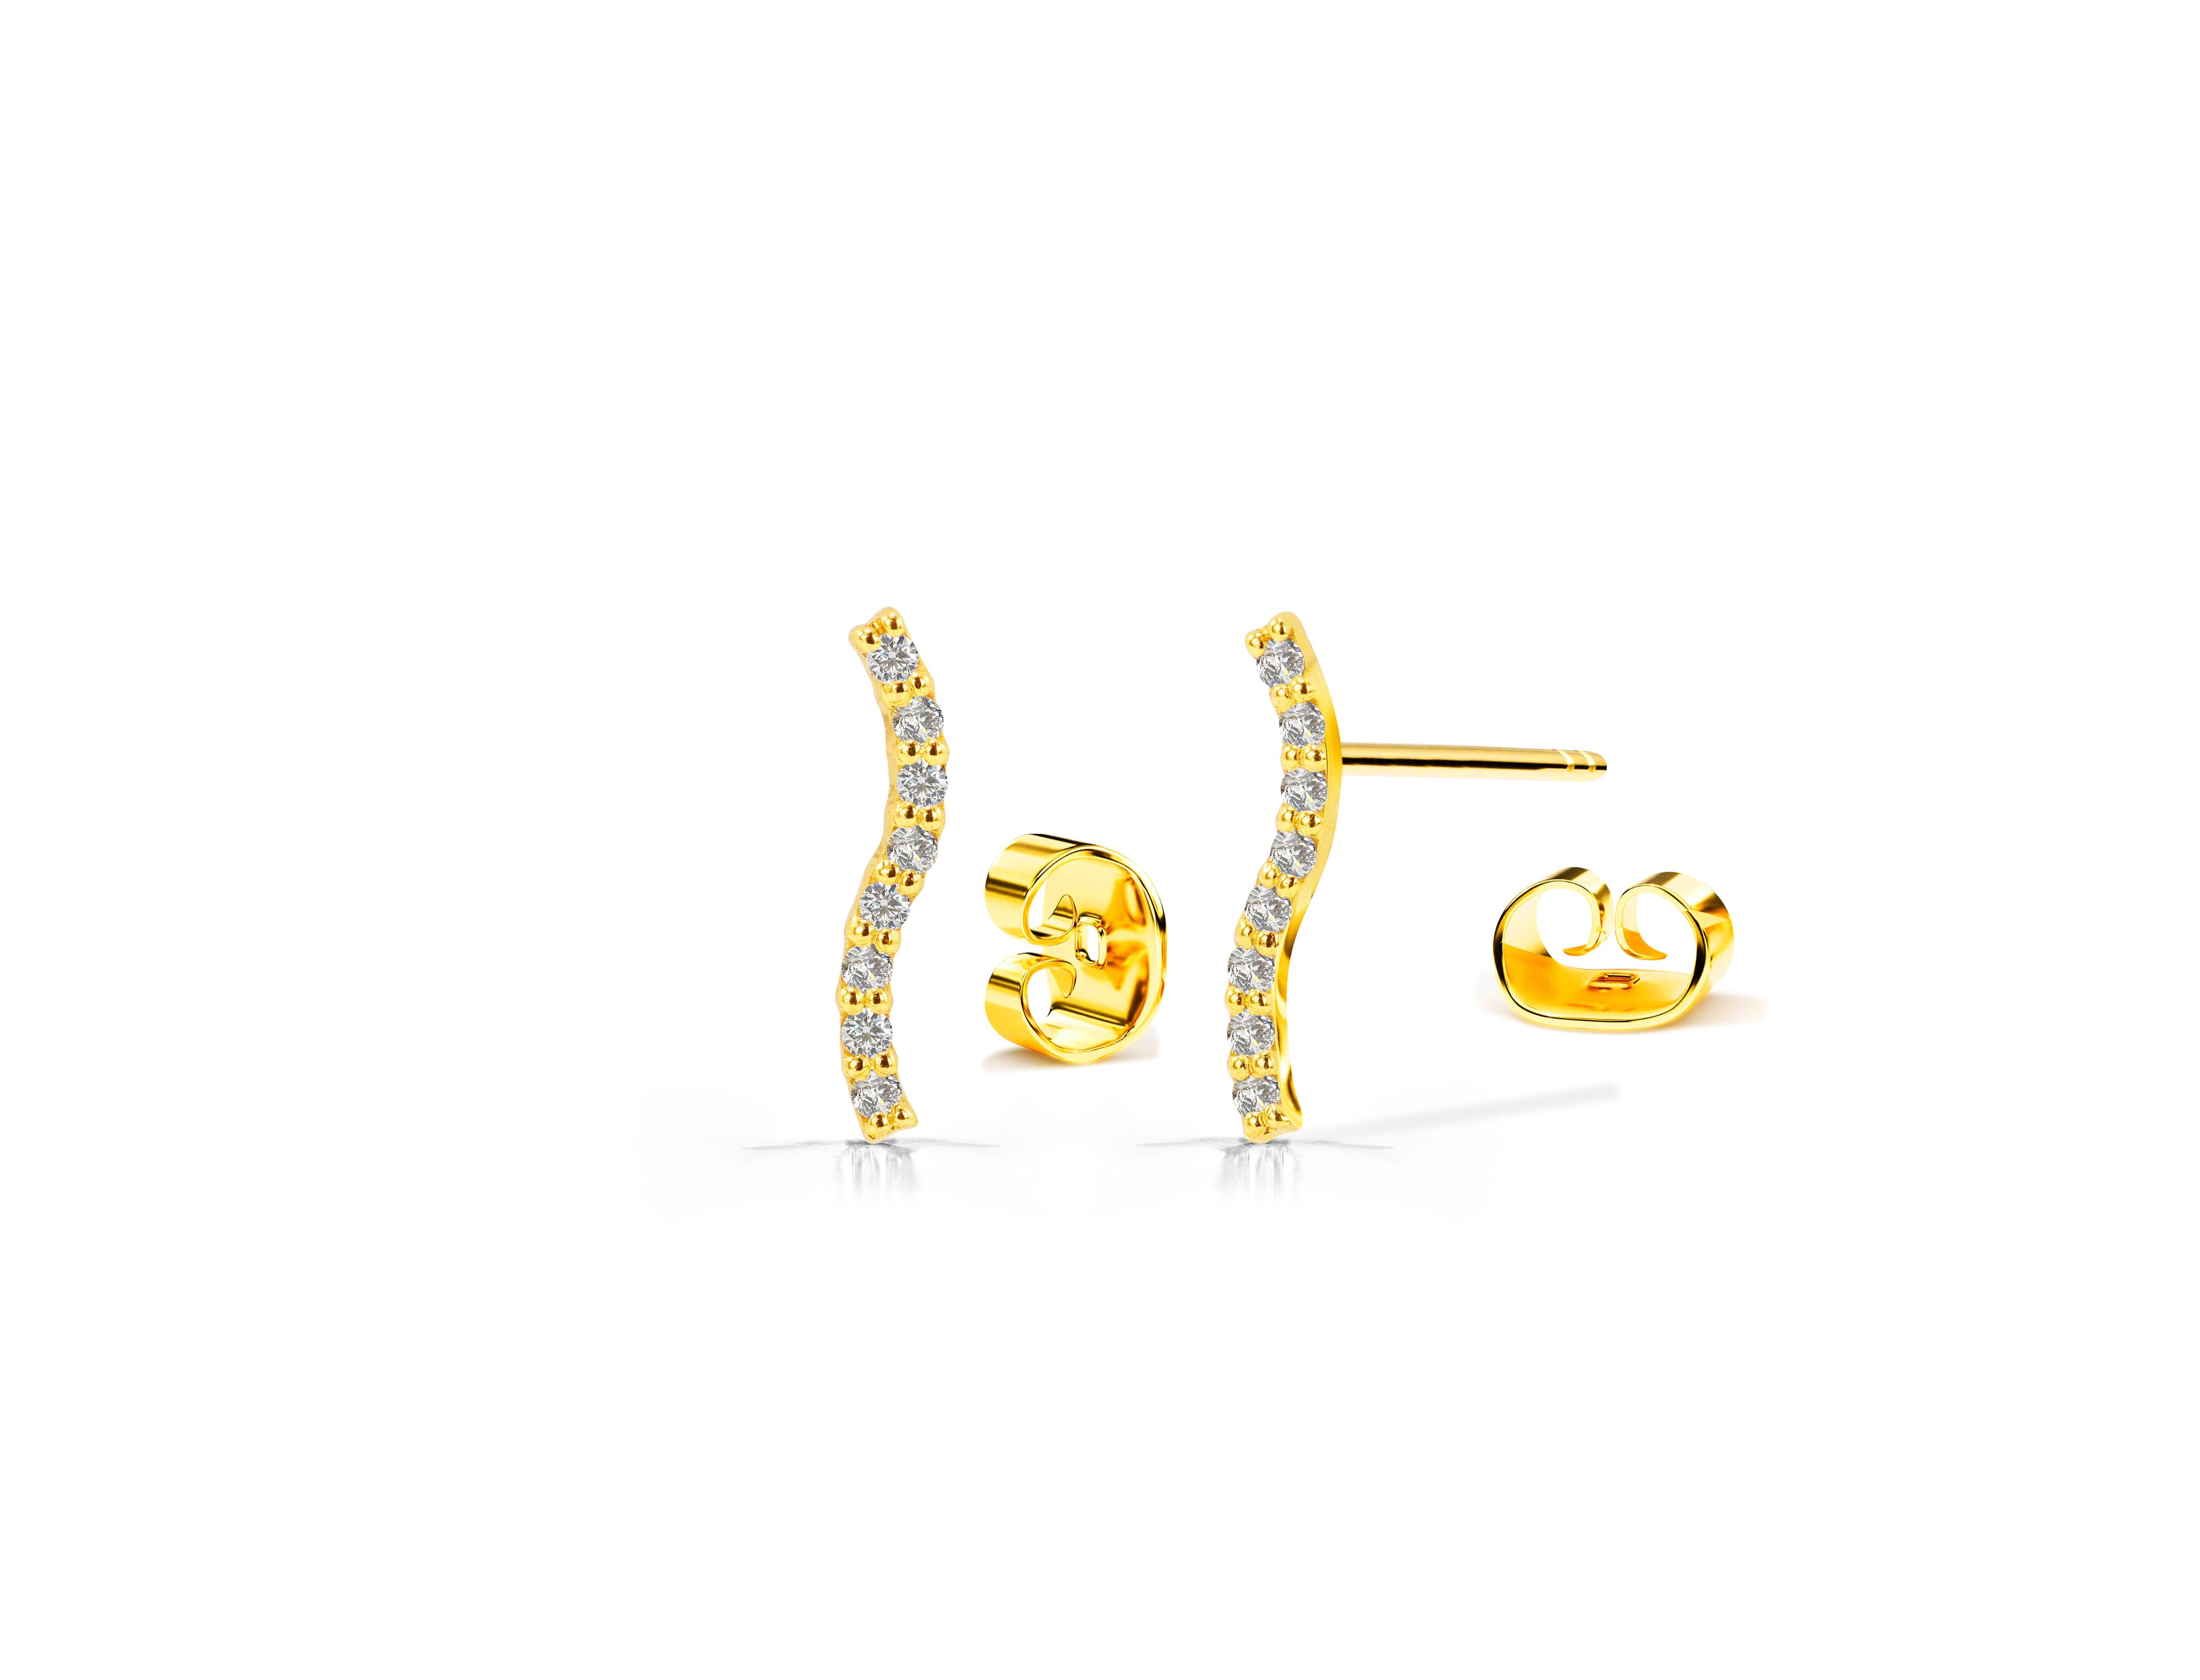 14k Gold Curved Bar Earrings Diamond Studs Minimalist Trendy Earrings